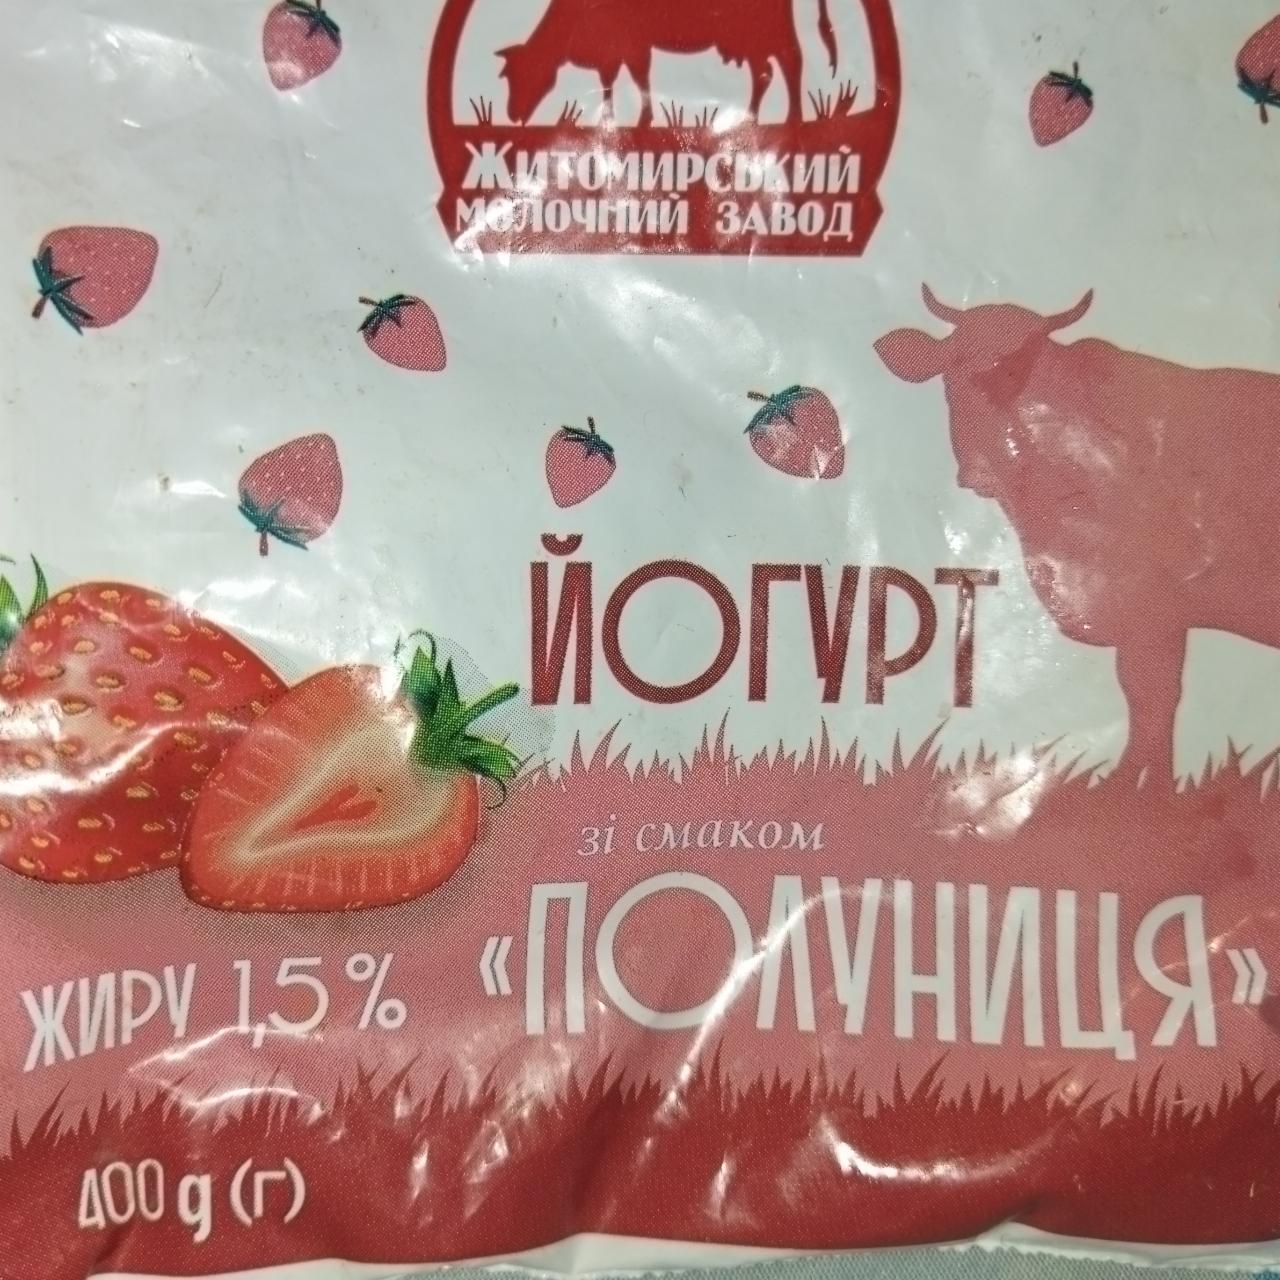 Фото - Йогурт 1.5% со вкусом клубники Житомирский молочный завод